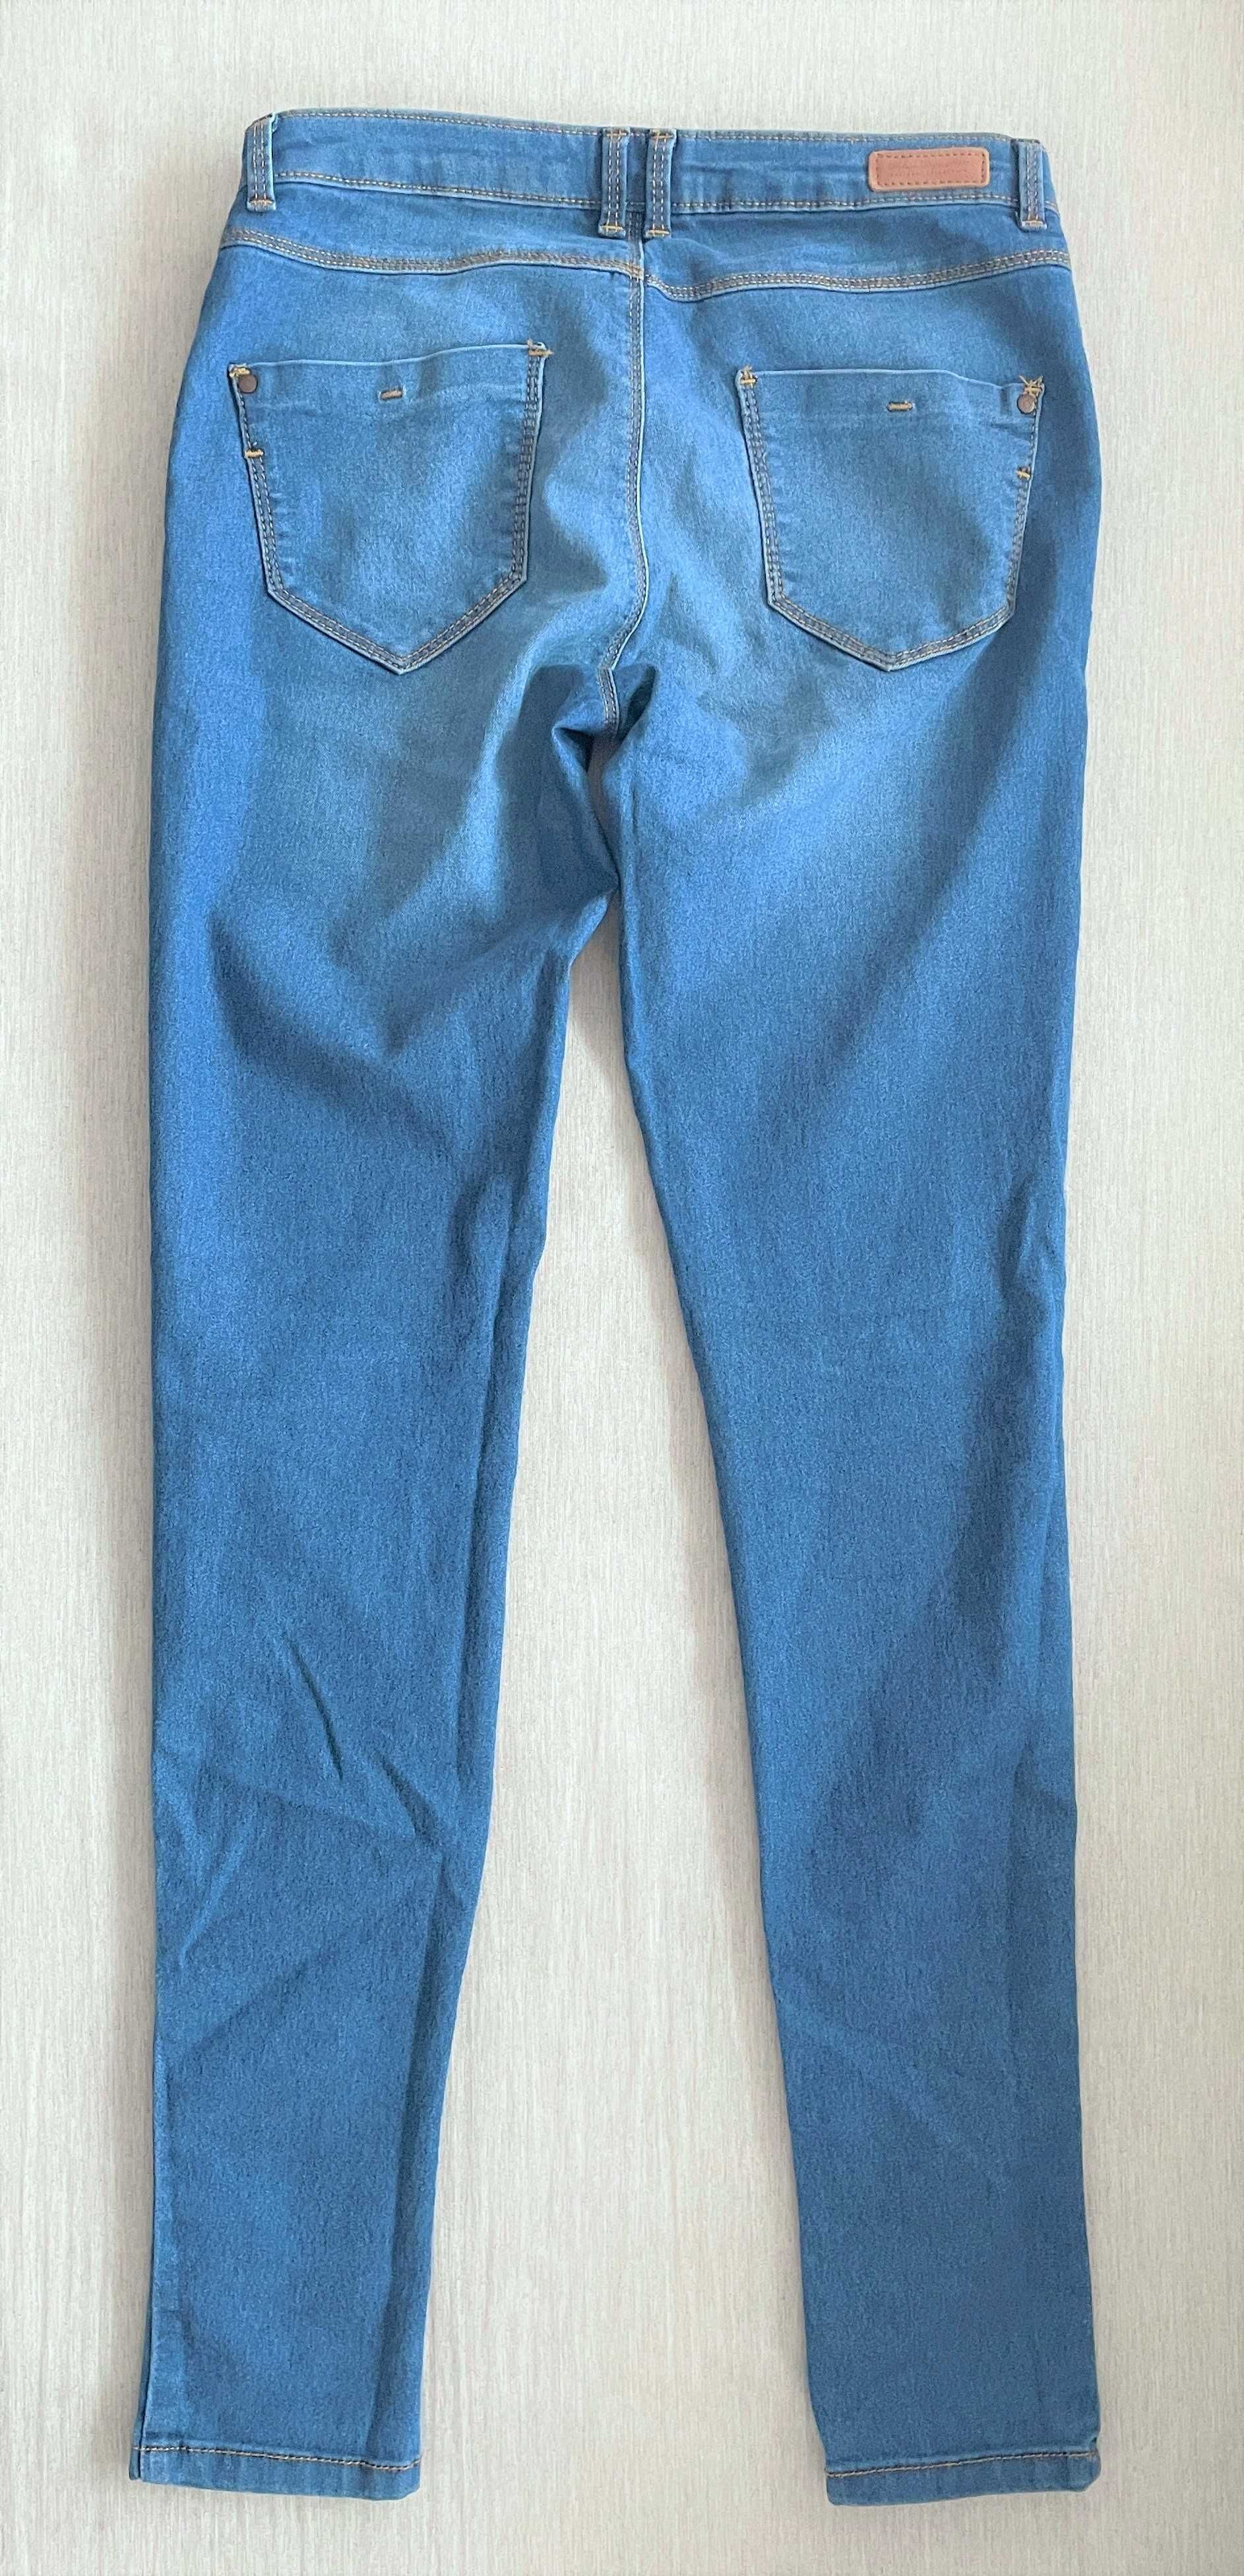 Spodnie jeansowe - ciemny jeans Pimkie